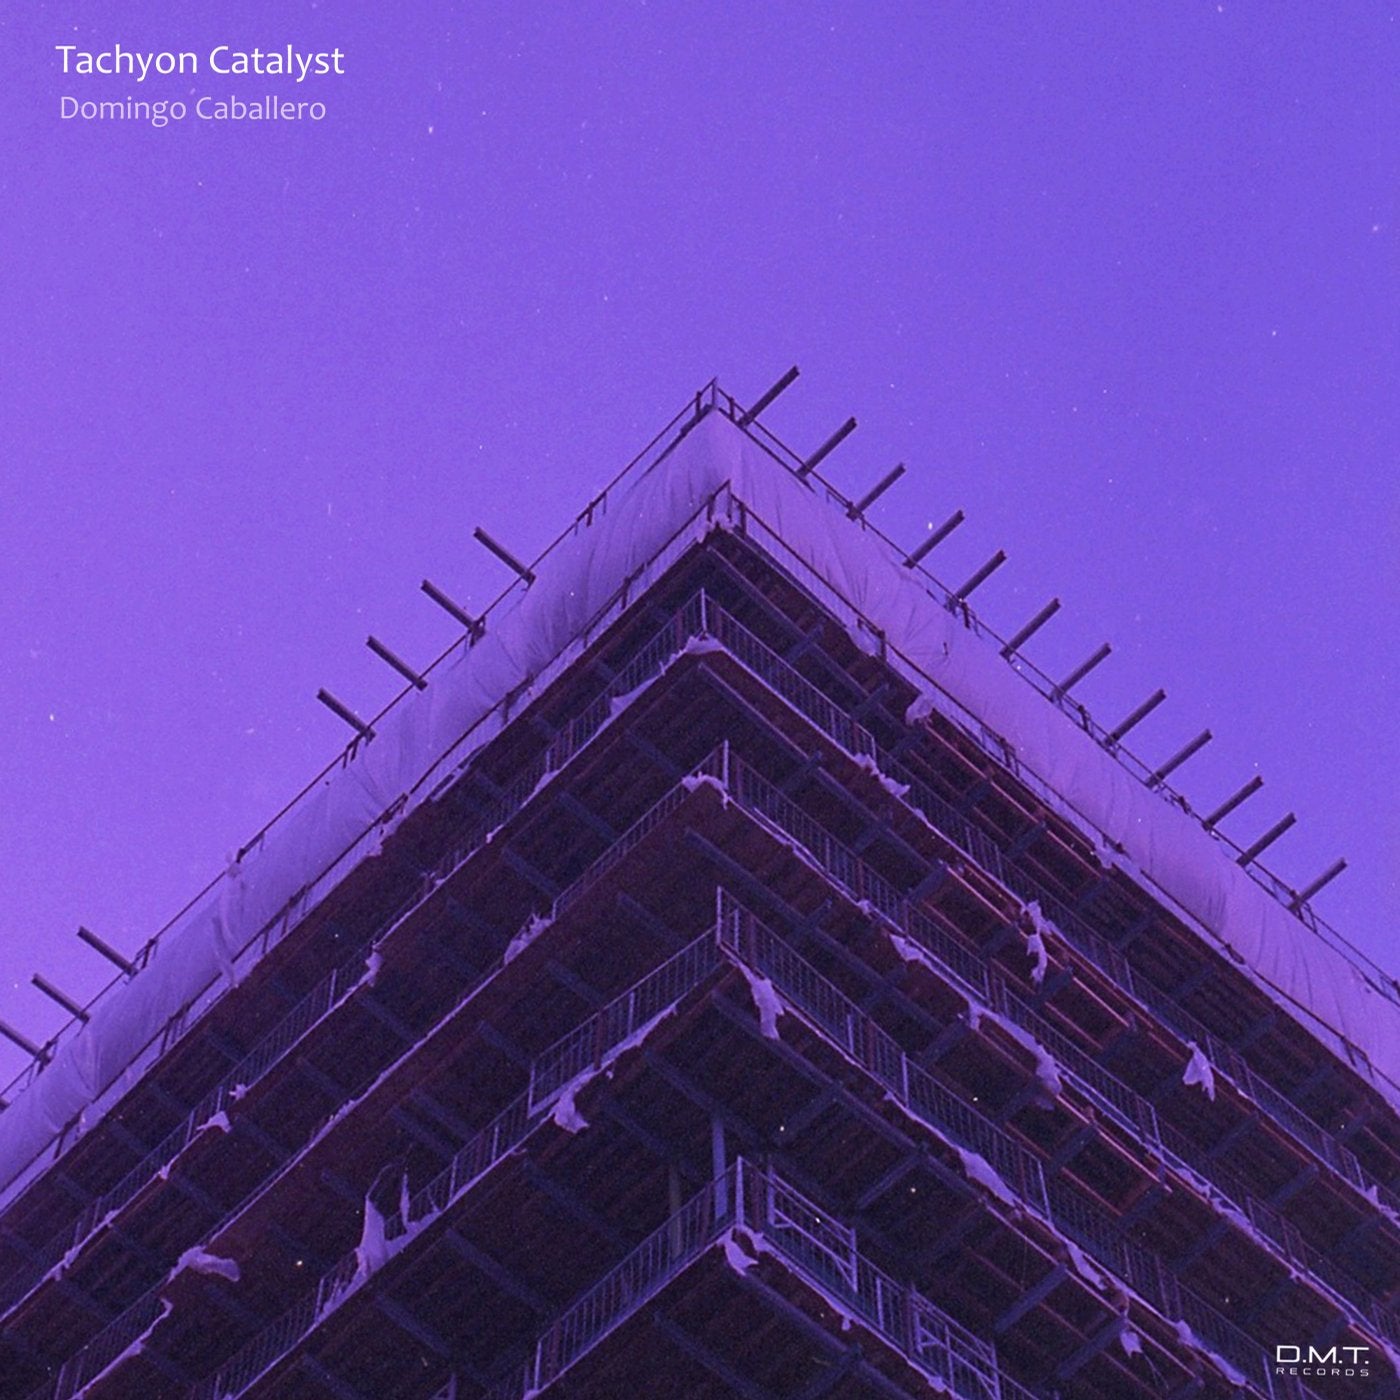 Tachyon Catalyst